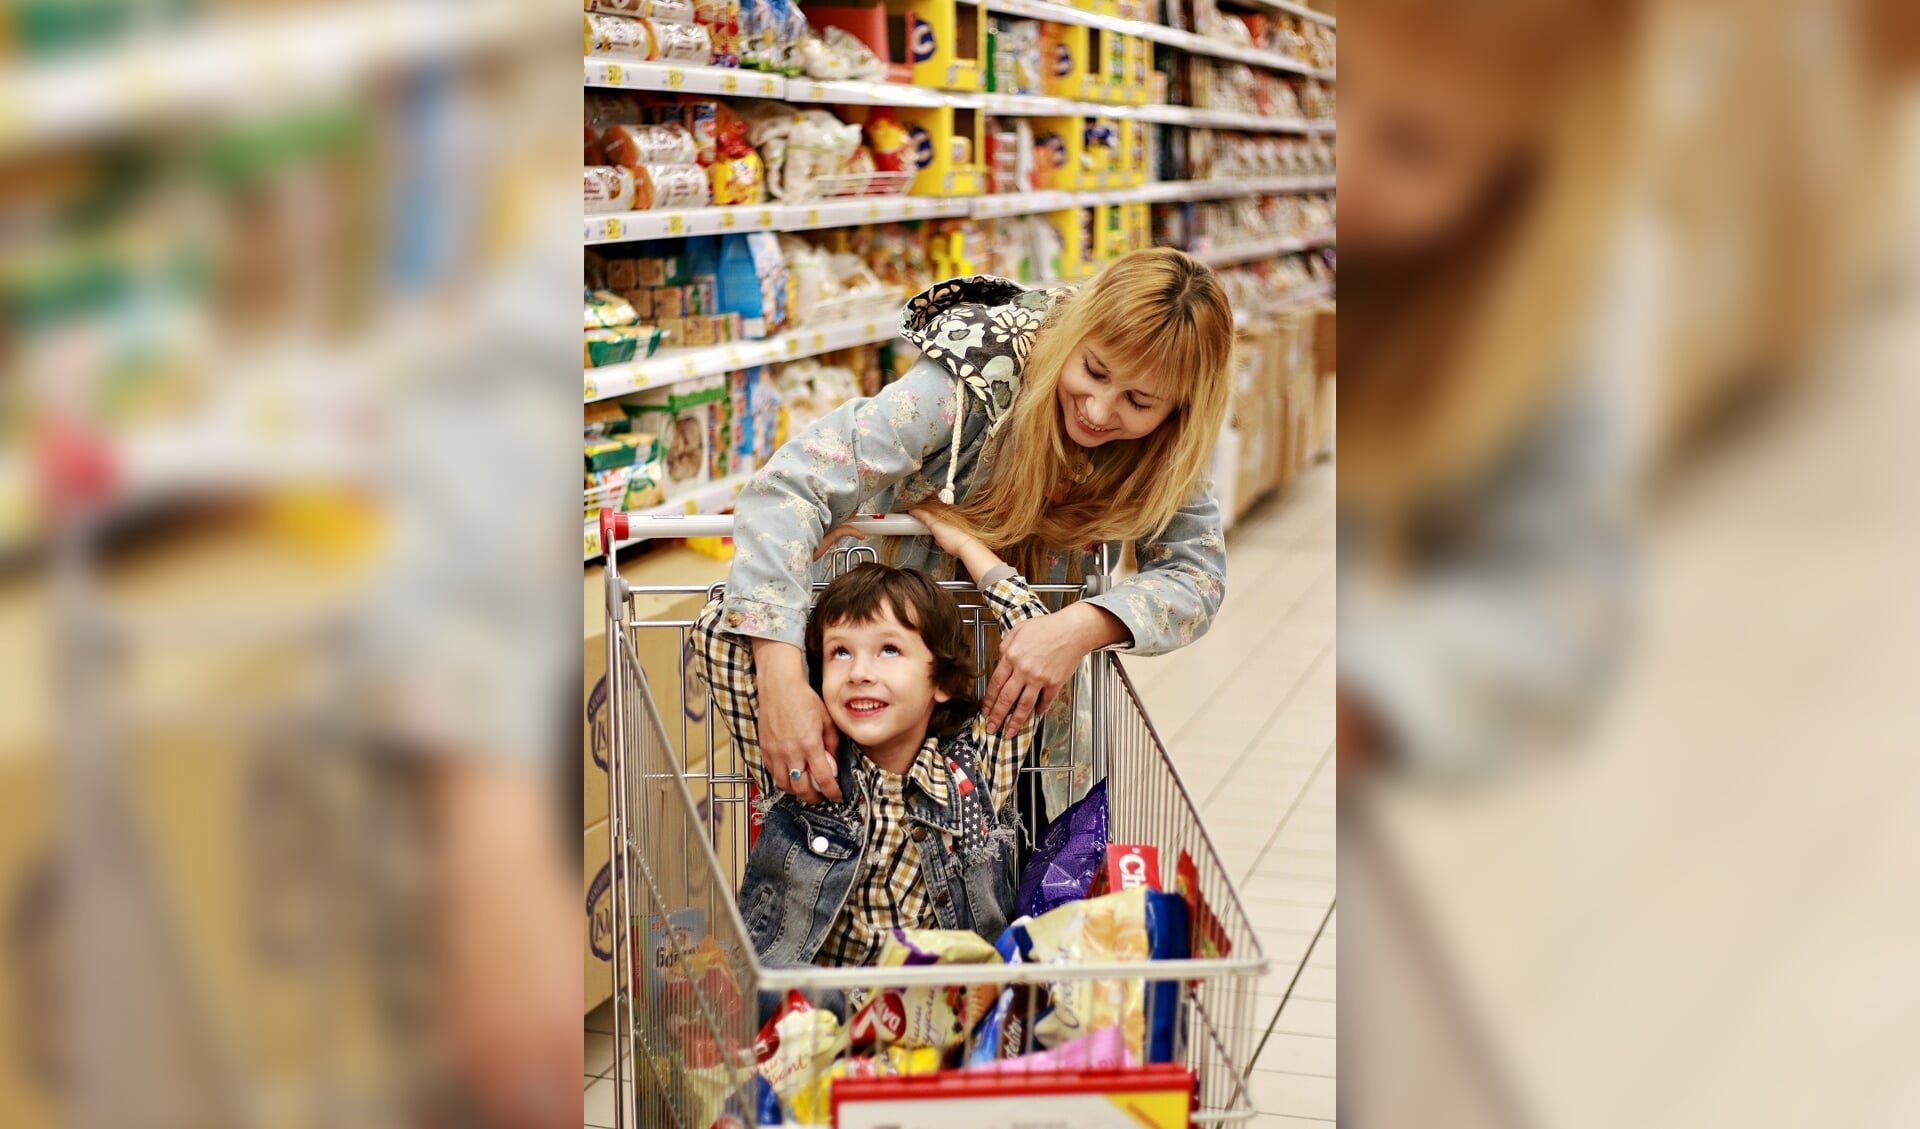 Snel door de supermarkt met je kind en ook nog etiketten lezen? Dit kan en leer je in de webinar Hoe overleef ik de supermarkt?